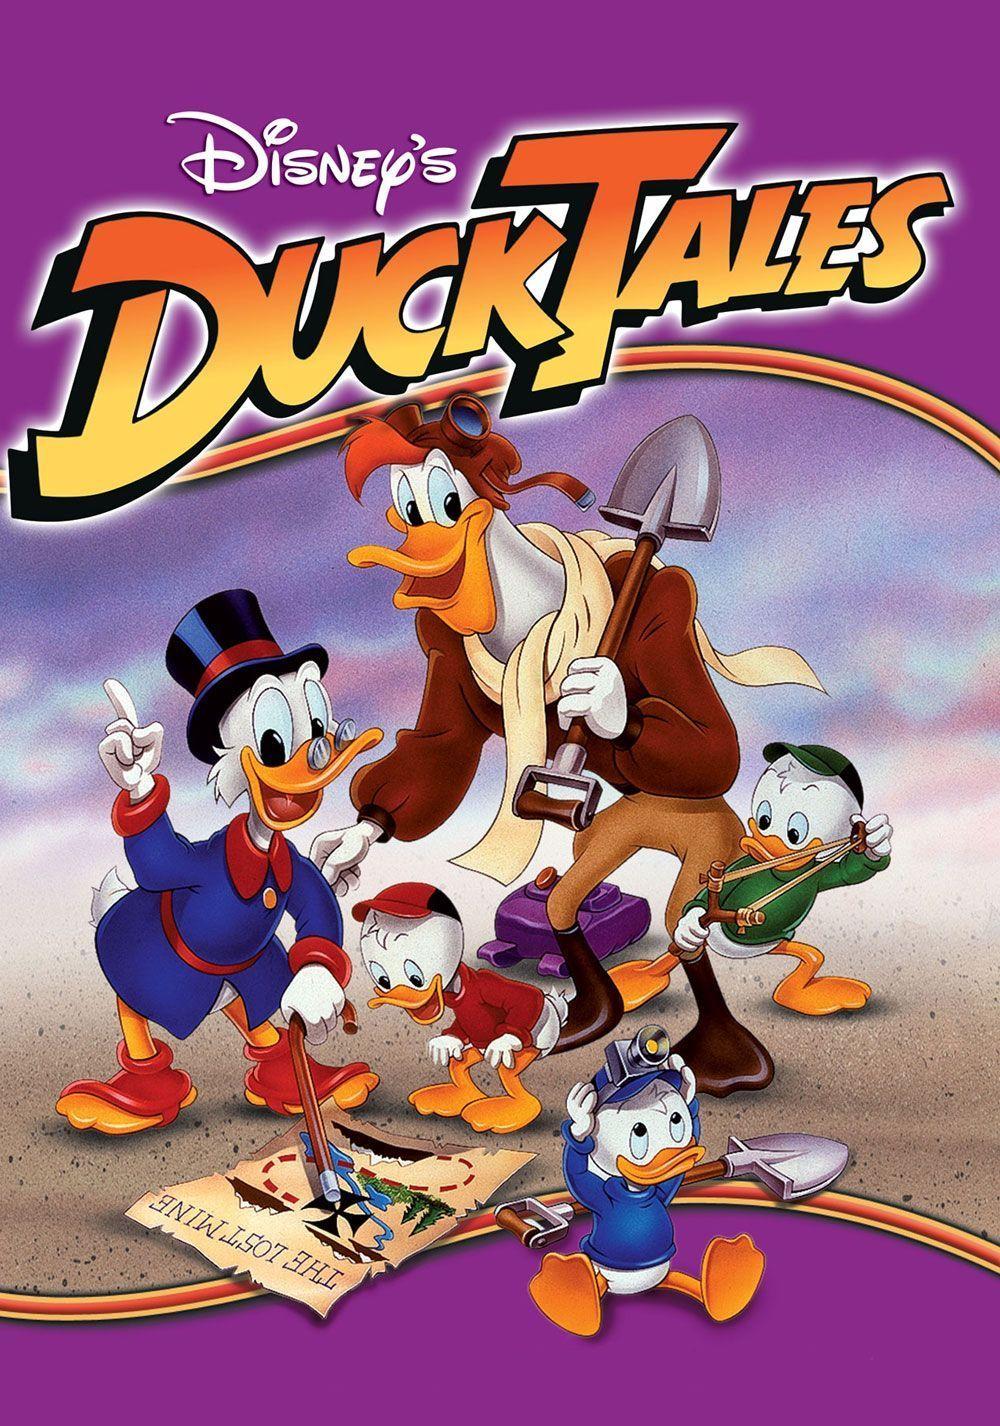 داک تالس (DuckTales)